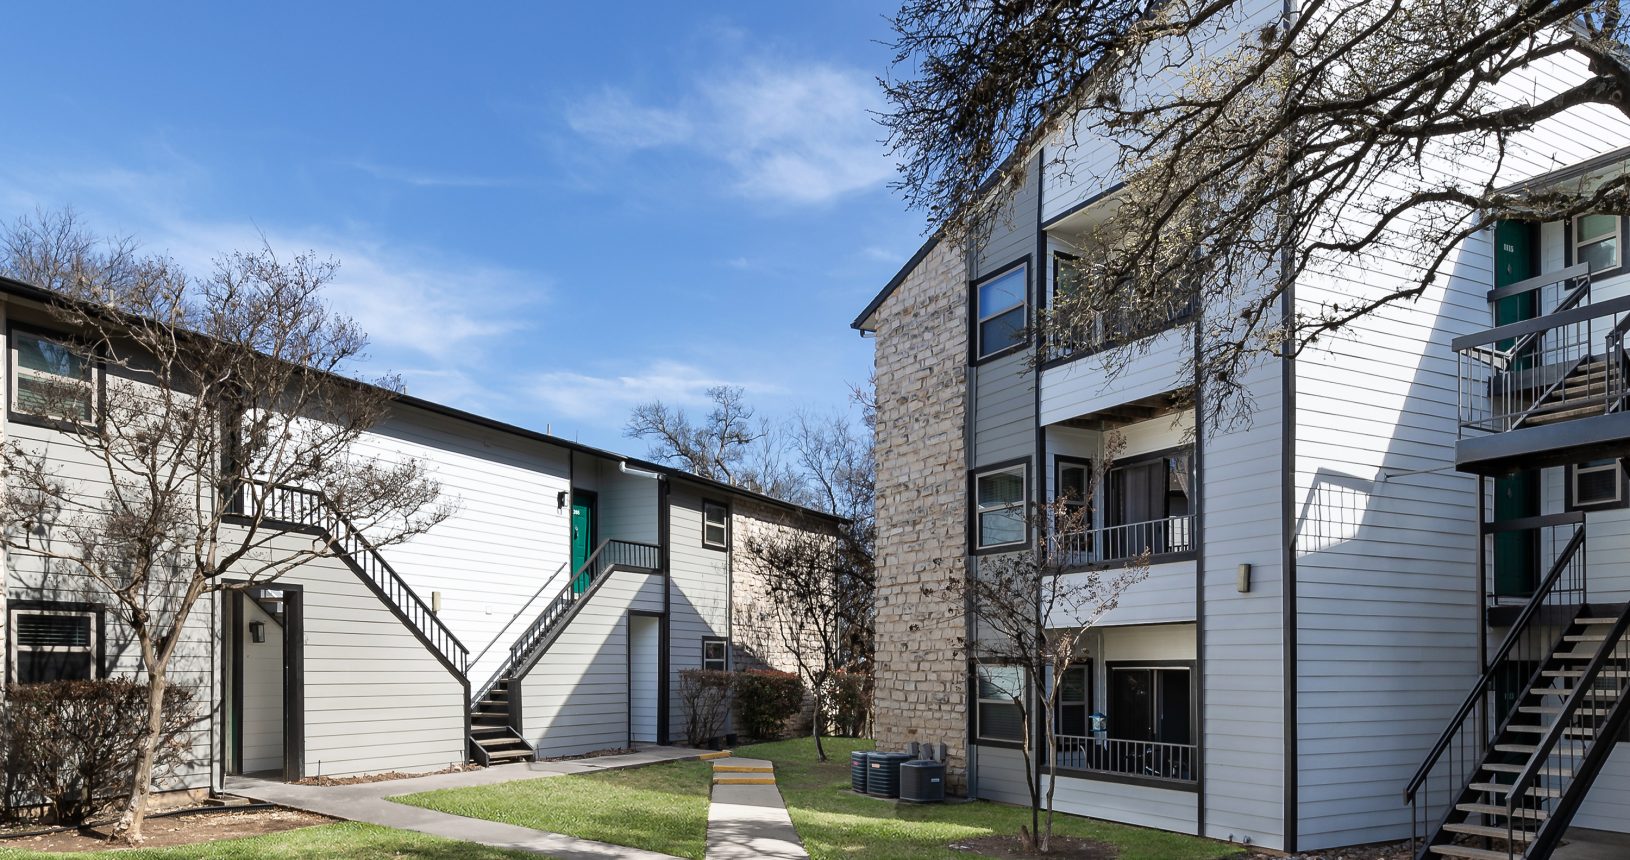 Retreat at Barton Creek - Austin, Texas - Commercial Multi Family Contractors - Contractors Inc